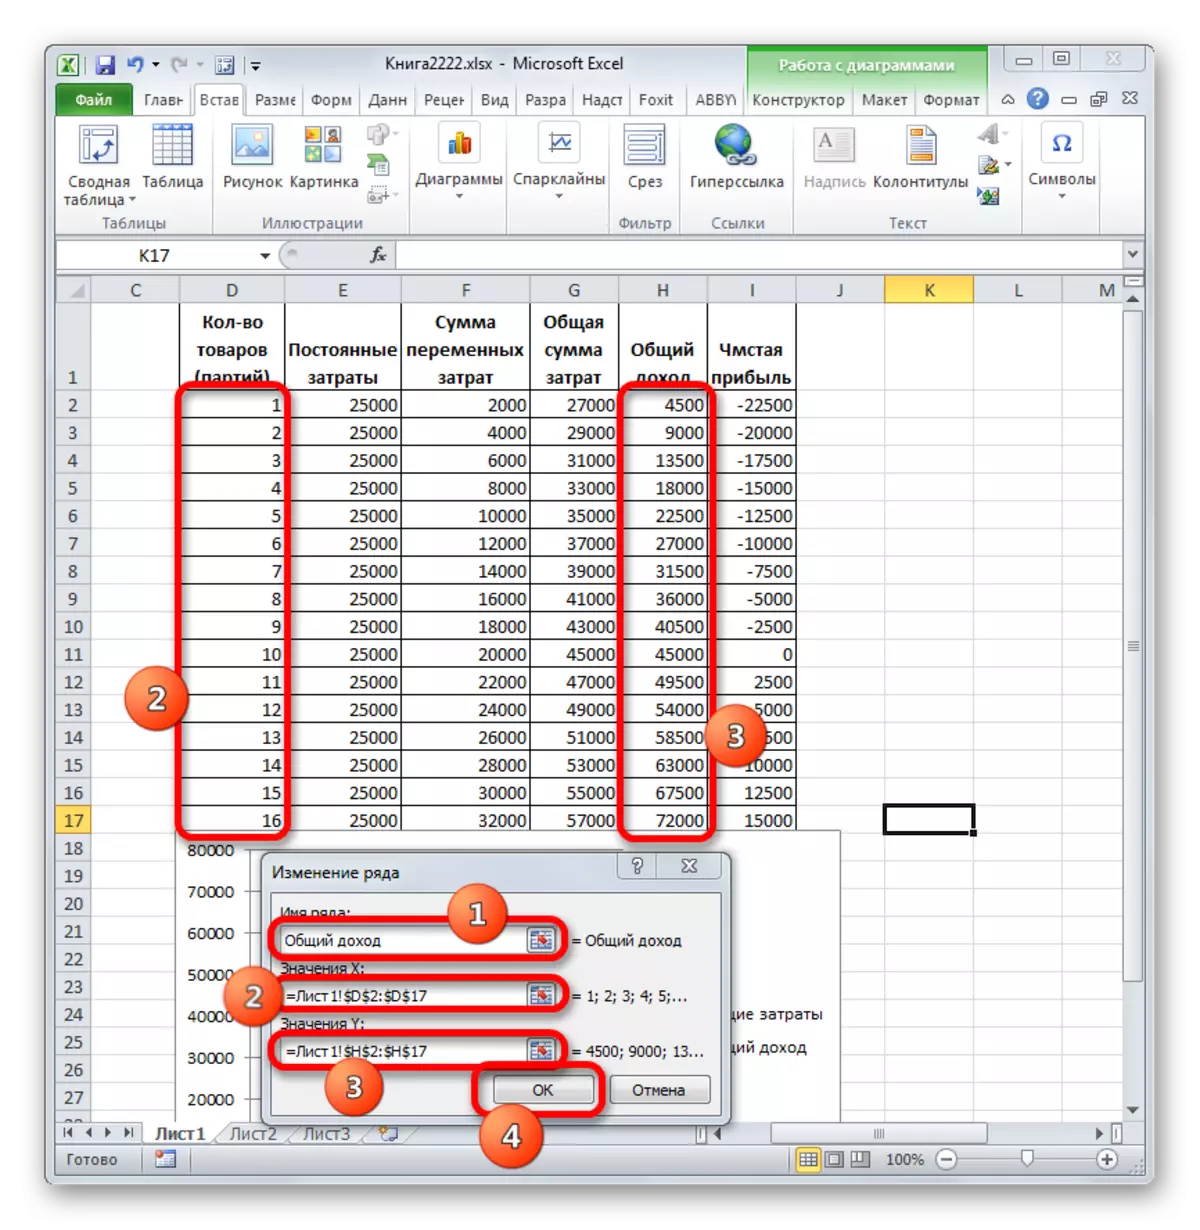 Jandéla parobihan dina séri total panghasilan dina Microsoft Excel